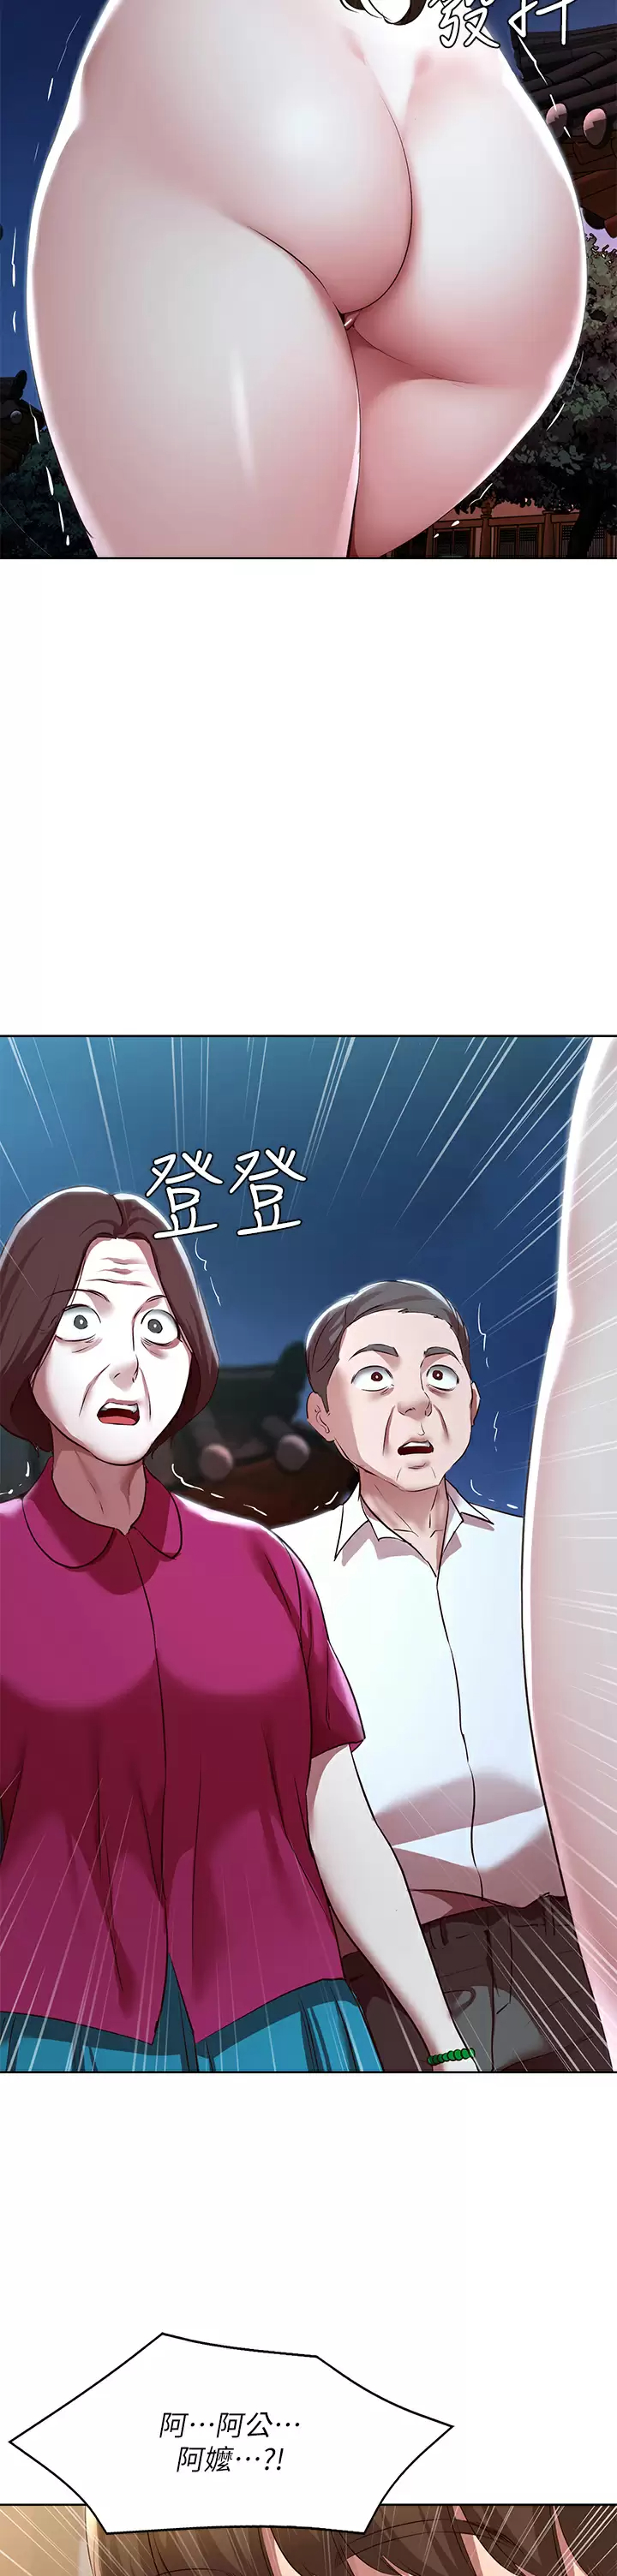 韩国污漫画 寄宿日記 第123话被家人发现了？! 31